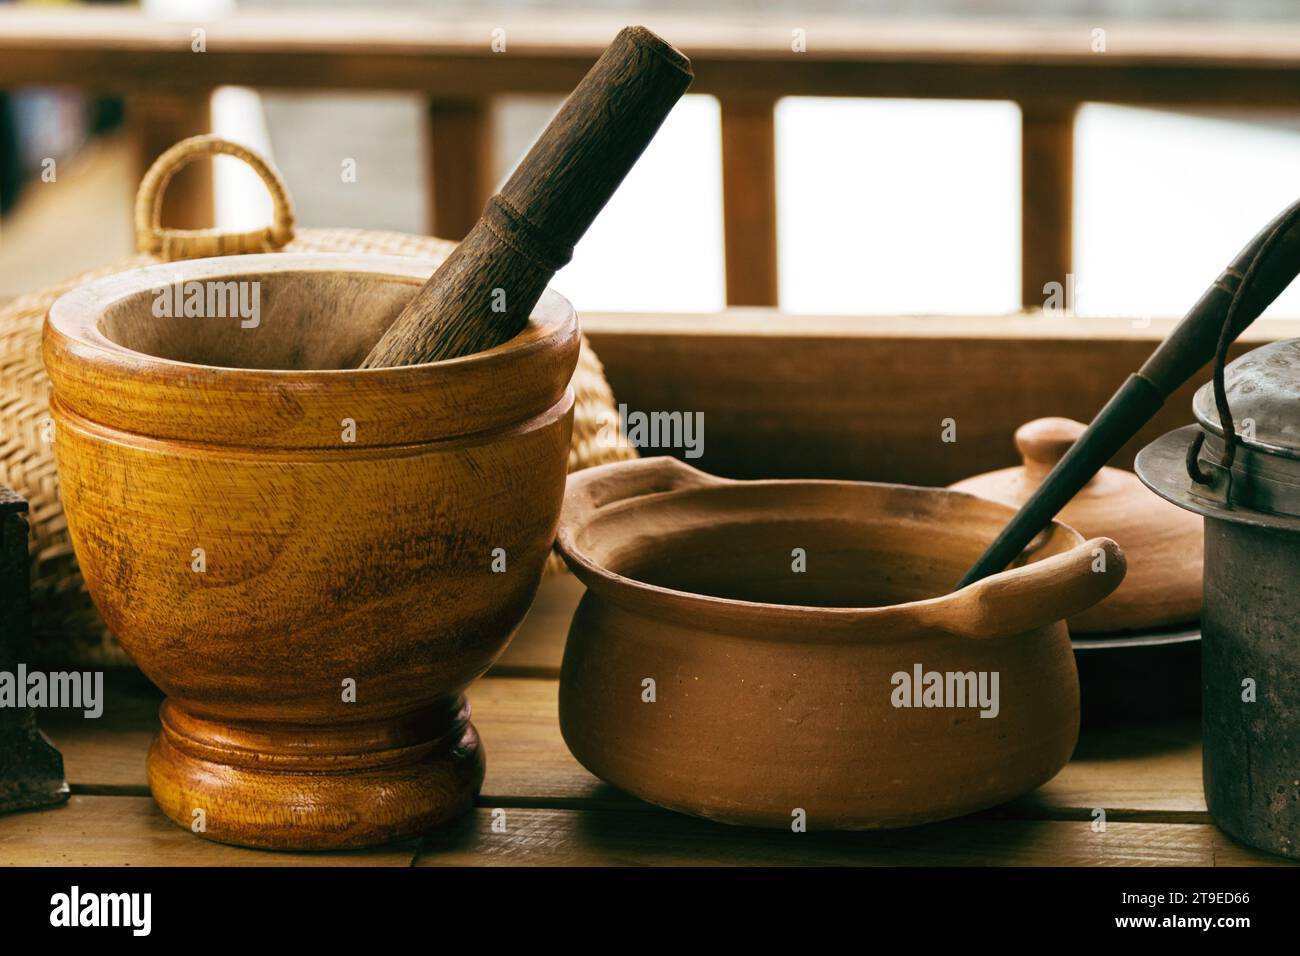 Nahaufnahme von handwerklich hergestelltem Mörtel, Stößel und anderem Küchengeschirr auf dem Holztisch im Landhaus. Stockfoto